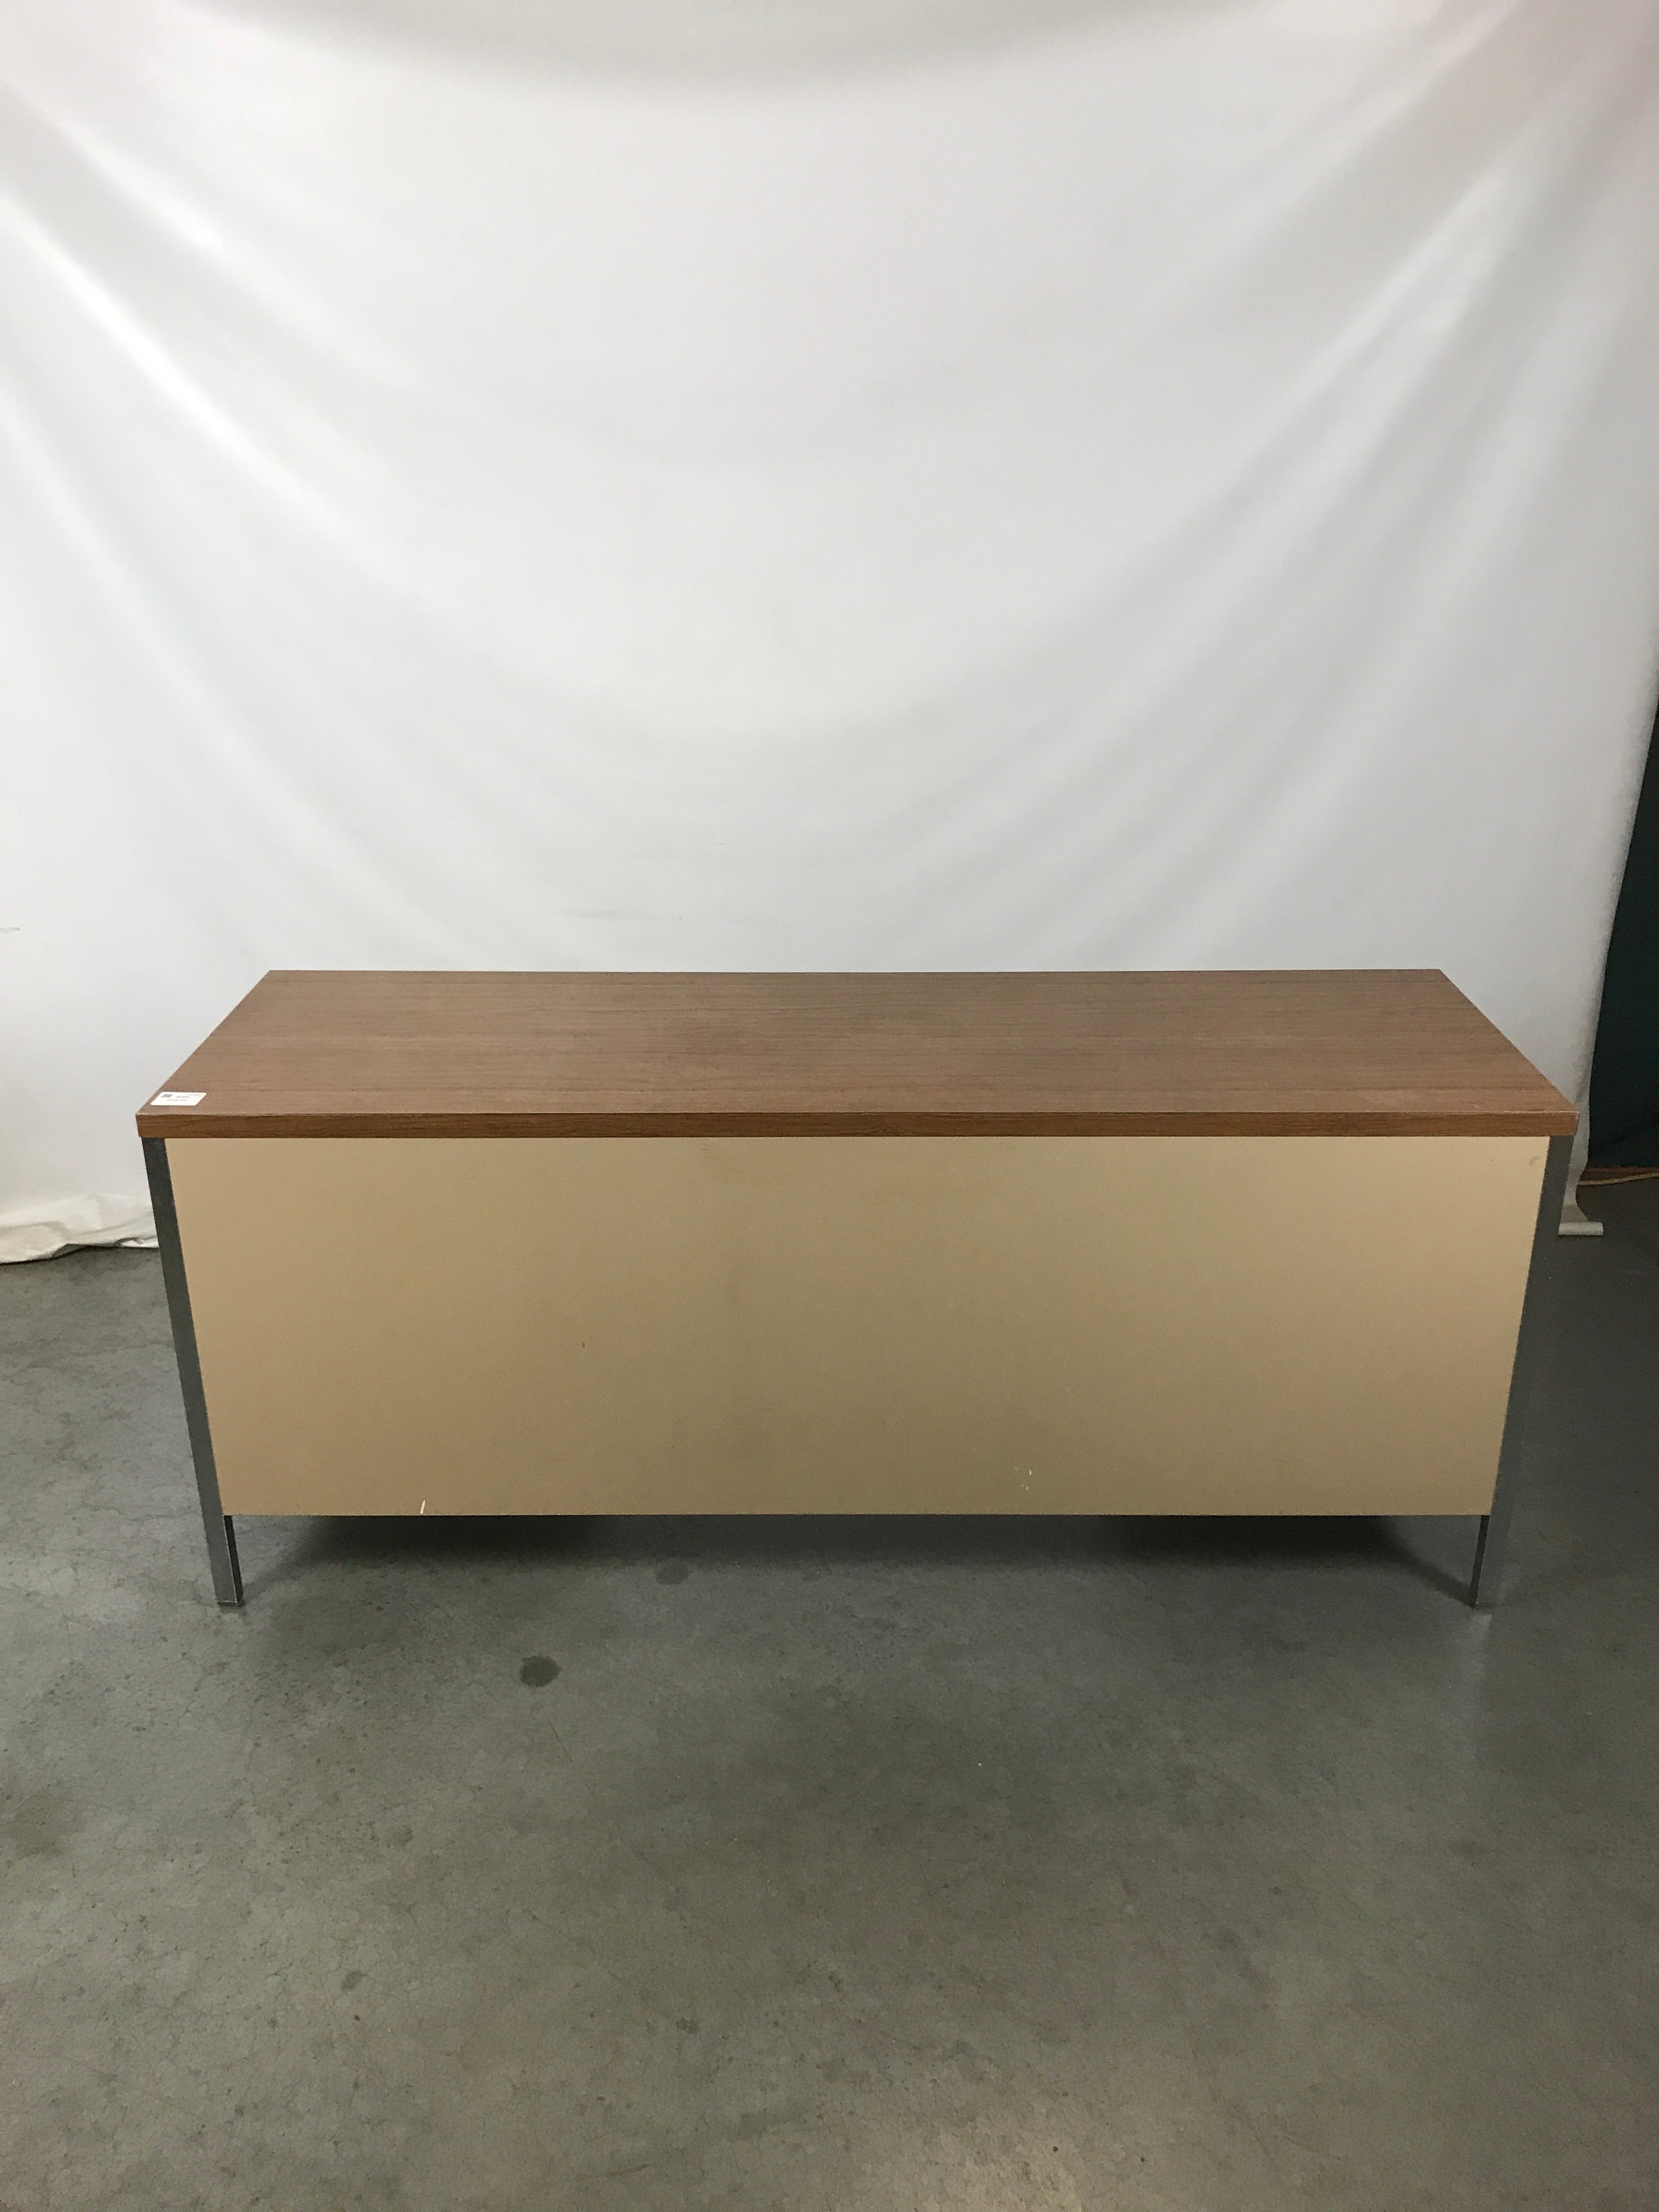 Metal Desk with Wooden Top